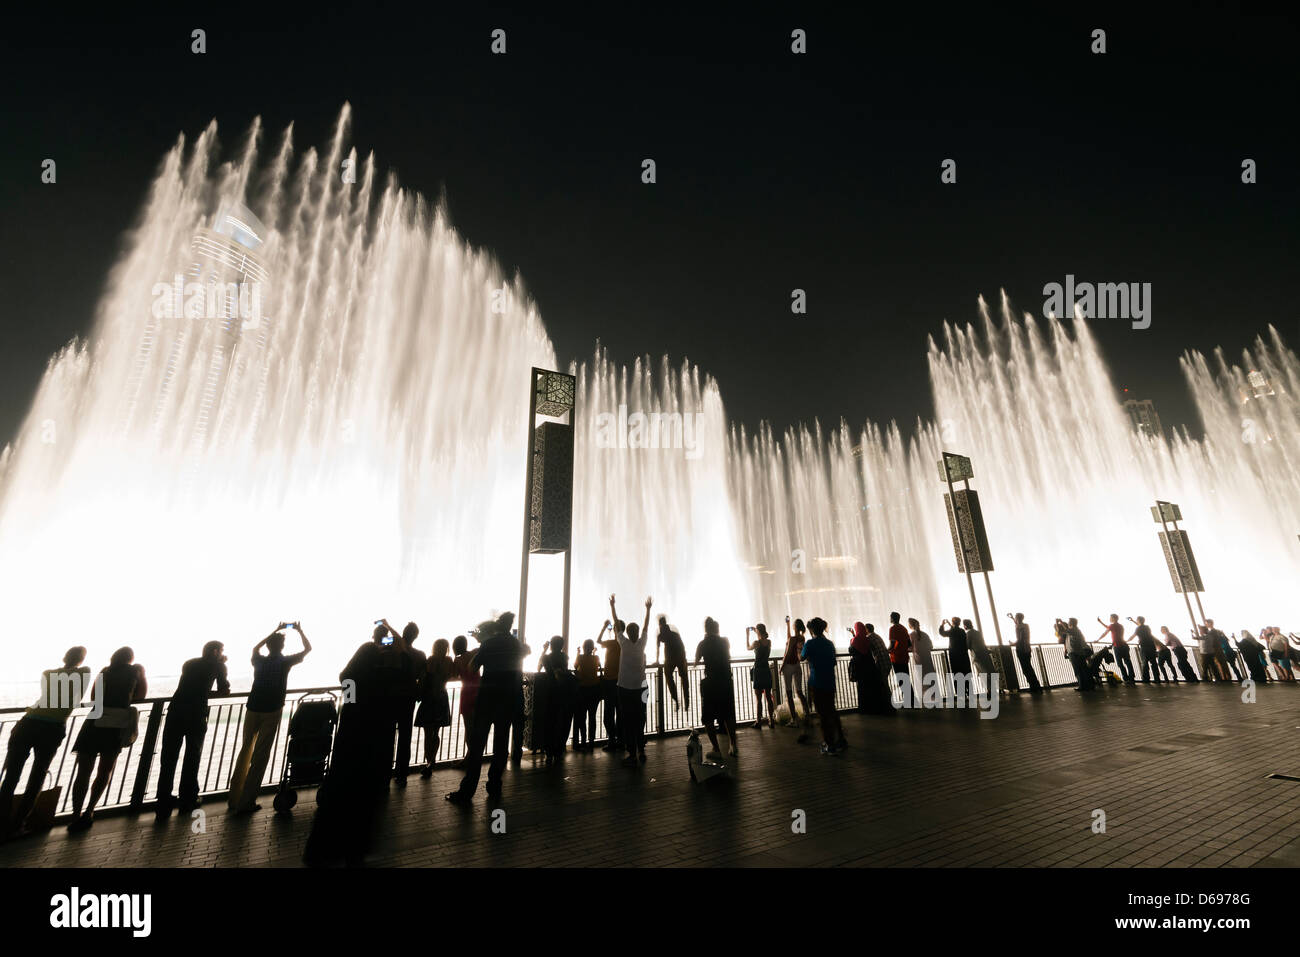 Vista nocturna de la fuente de Dubai en el Dubai Mall, en el centro de Dubai, Emiratos Árabes Unidos Foto de stock